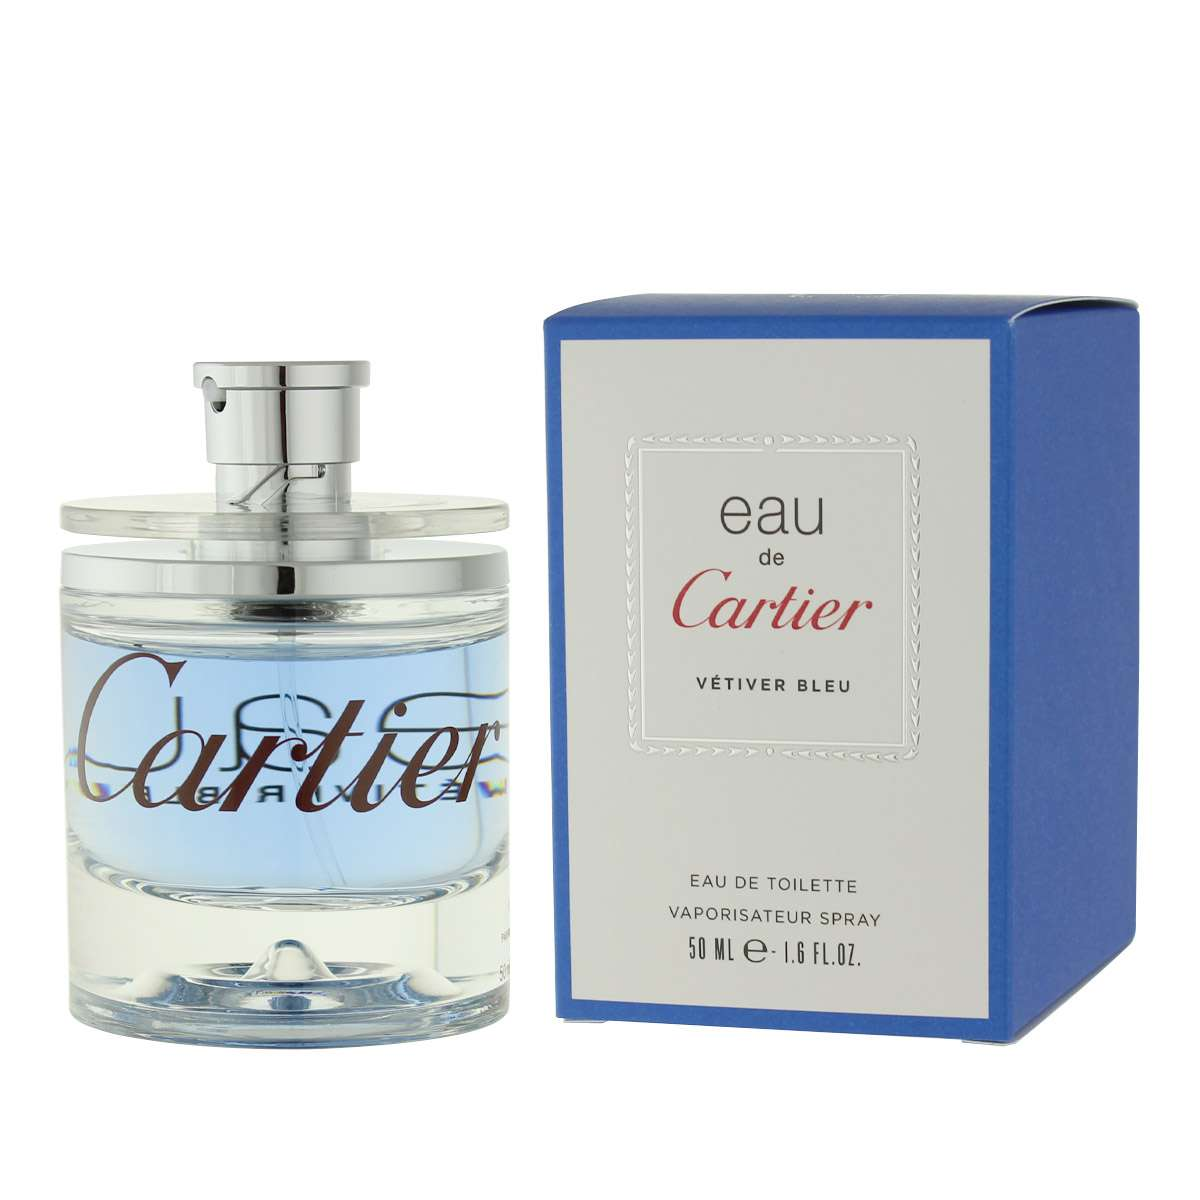 Cartier Eau de Cartier Vetiver Bleu - Eau de Toilette